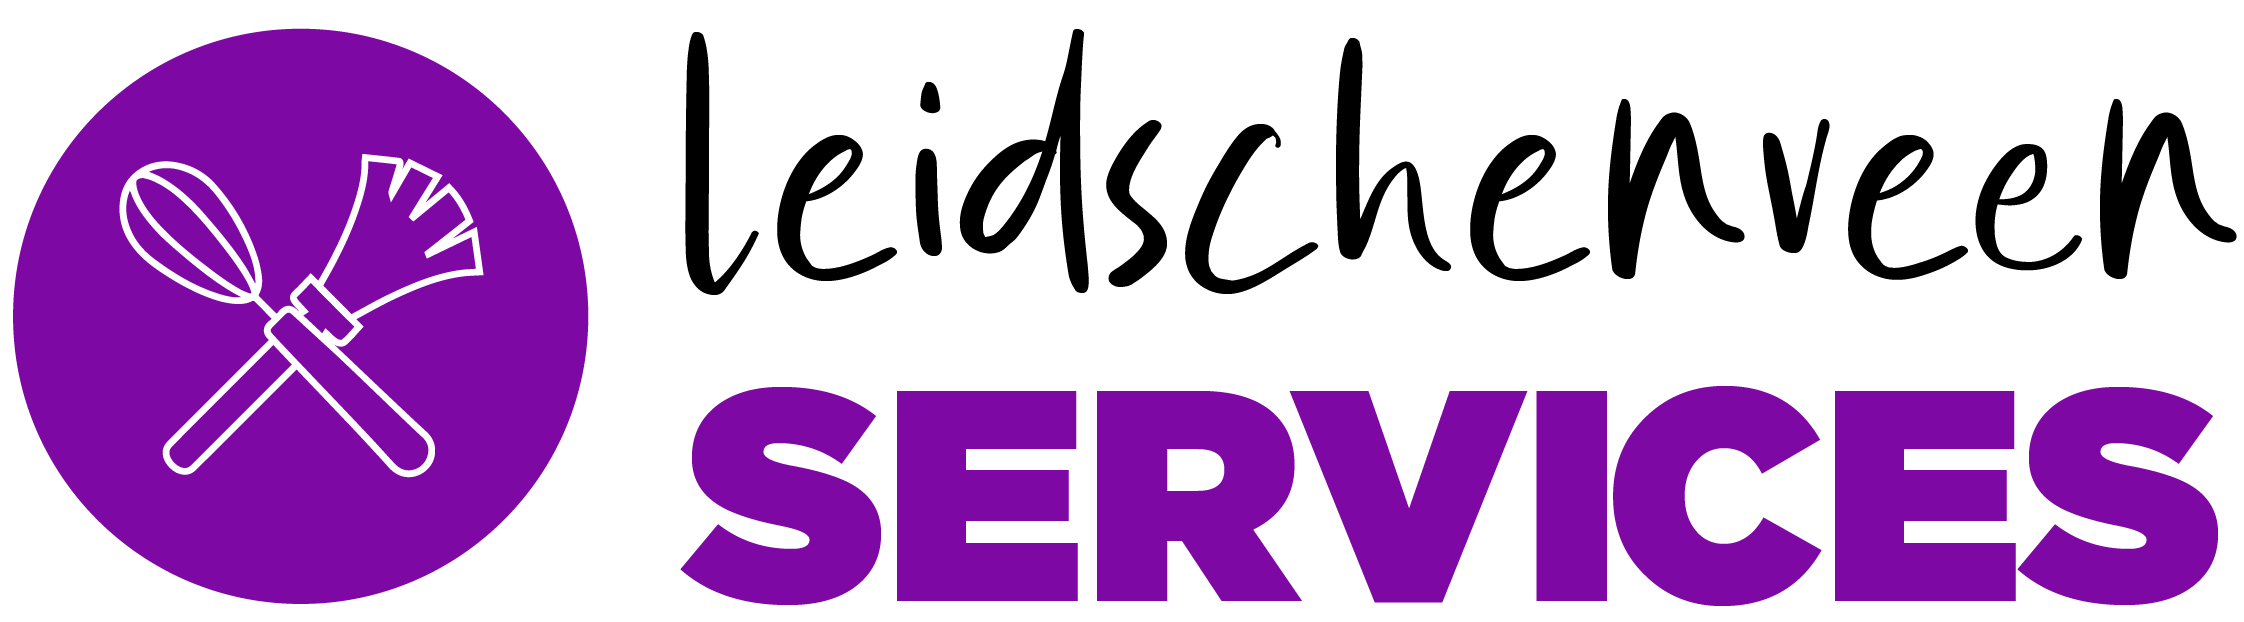 LVS Services Leidschenveen services logo